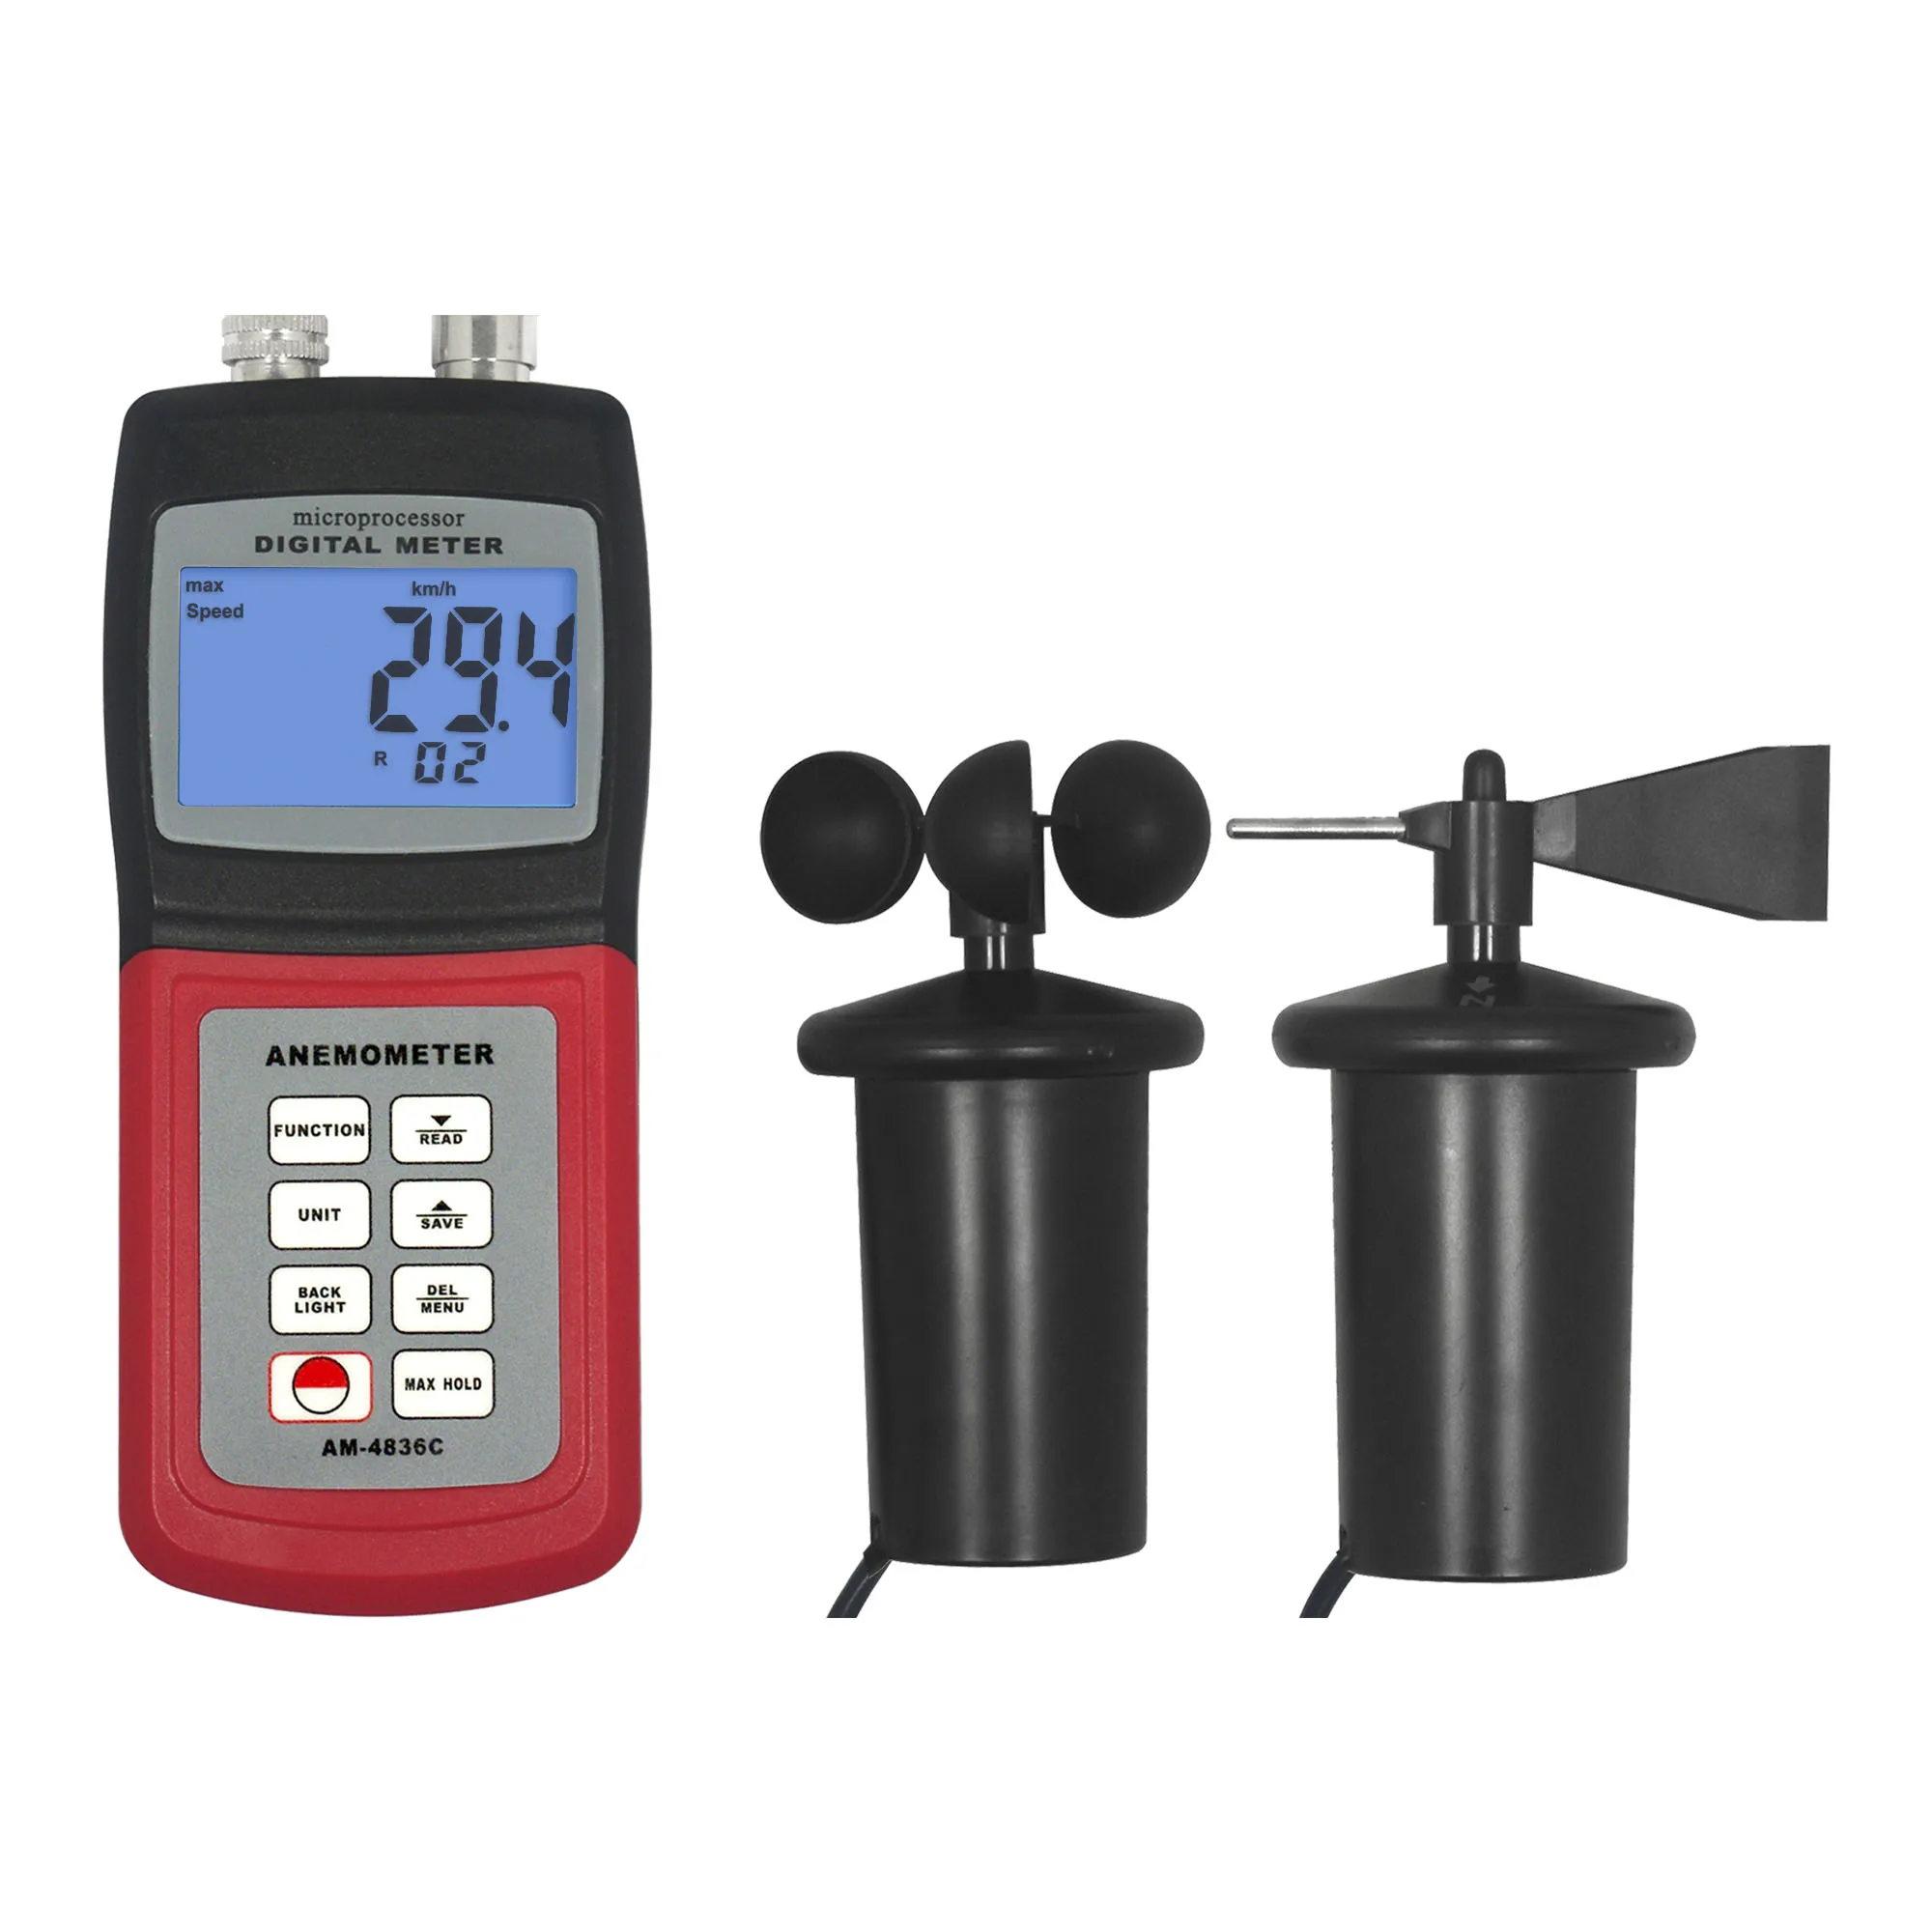 

LANDTEK Digital Marine Anemometer 3 cup Wind Speed Meter Device AM4836C